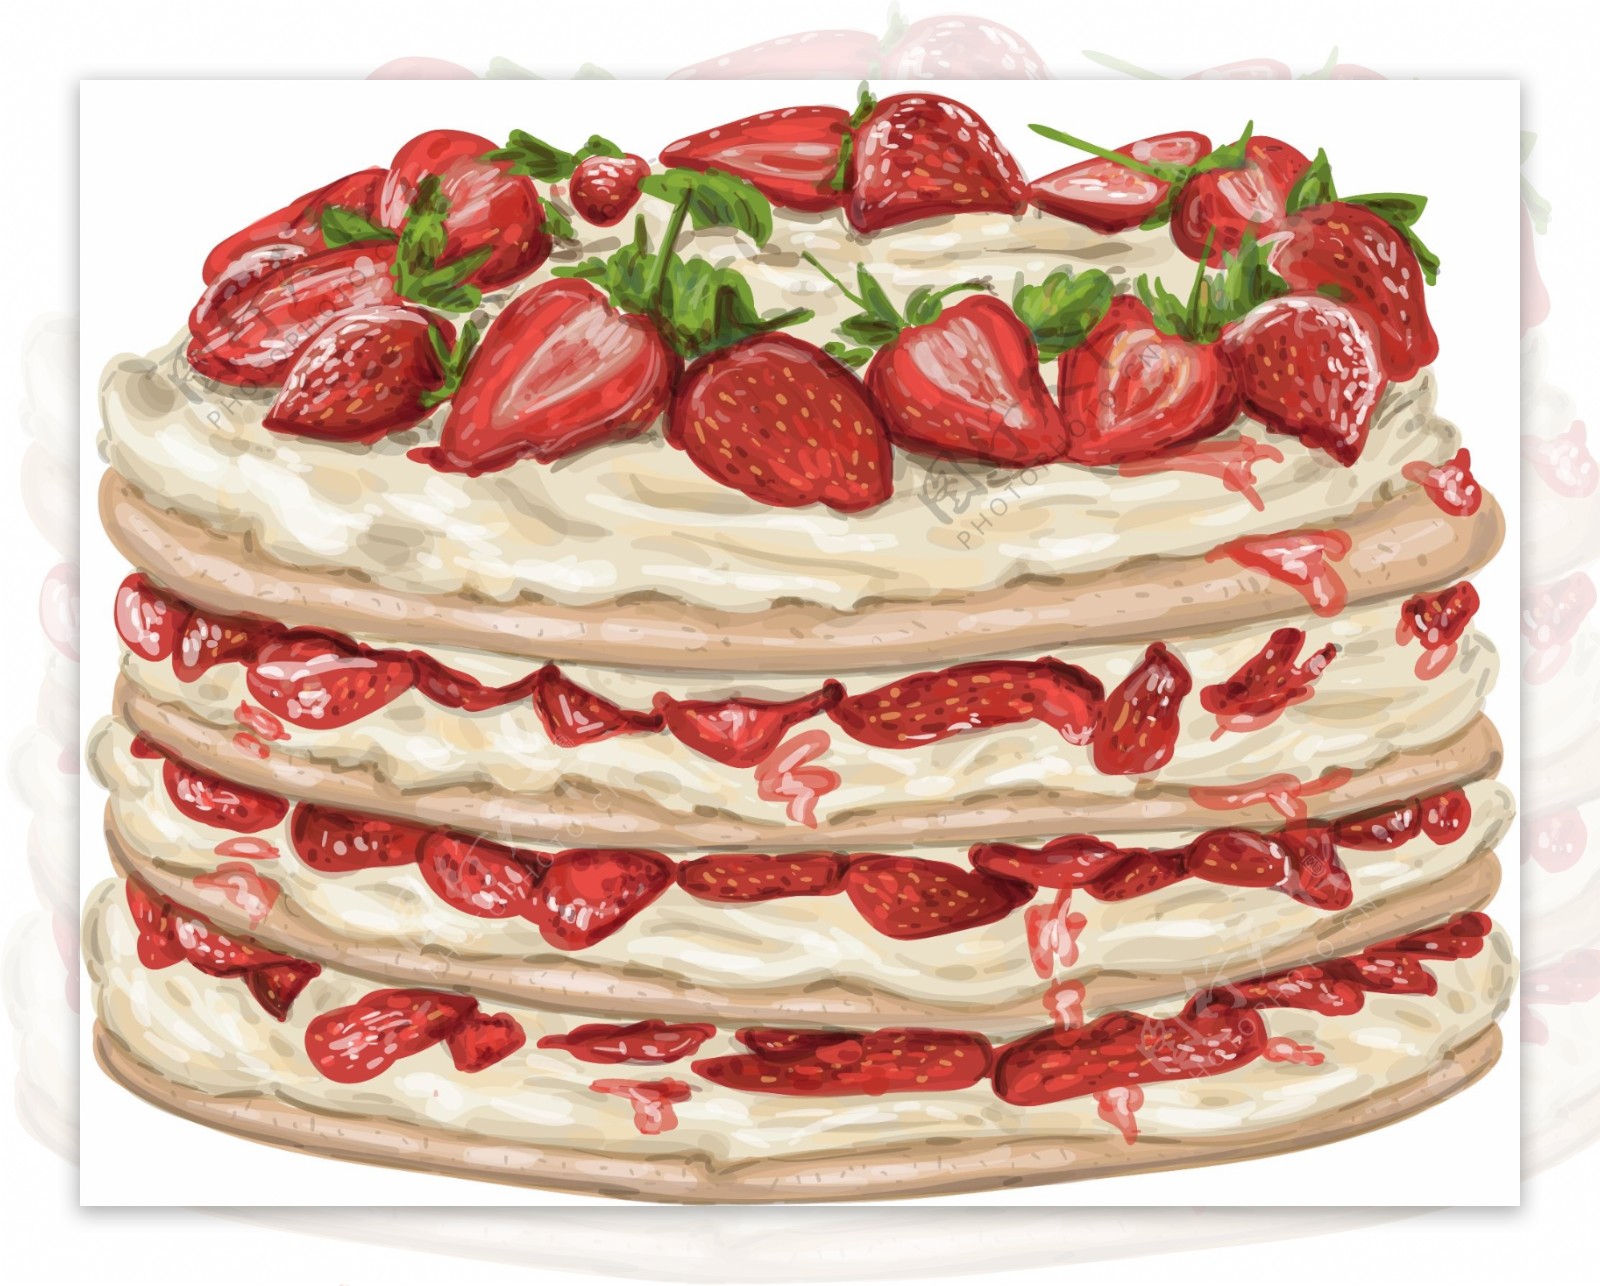 手绘奶油草莓蛋糕